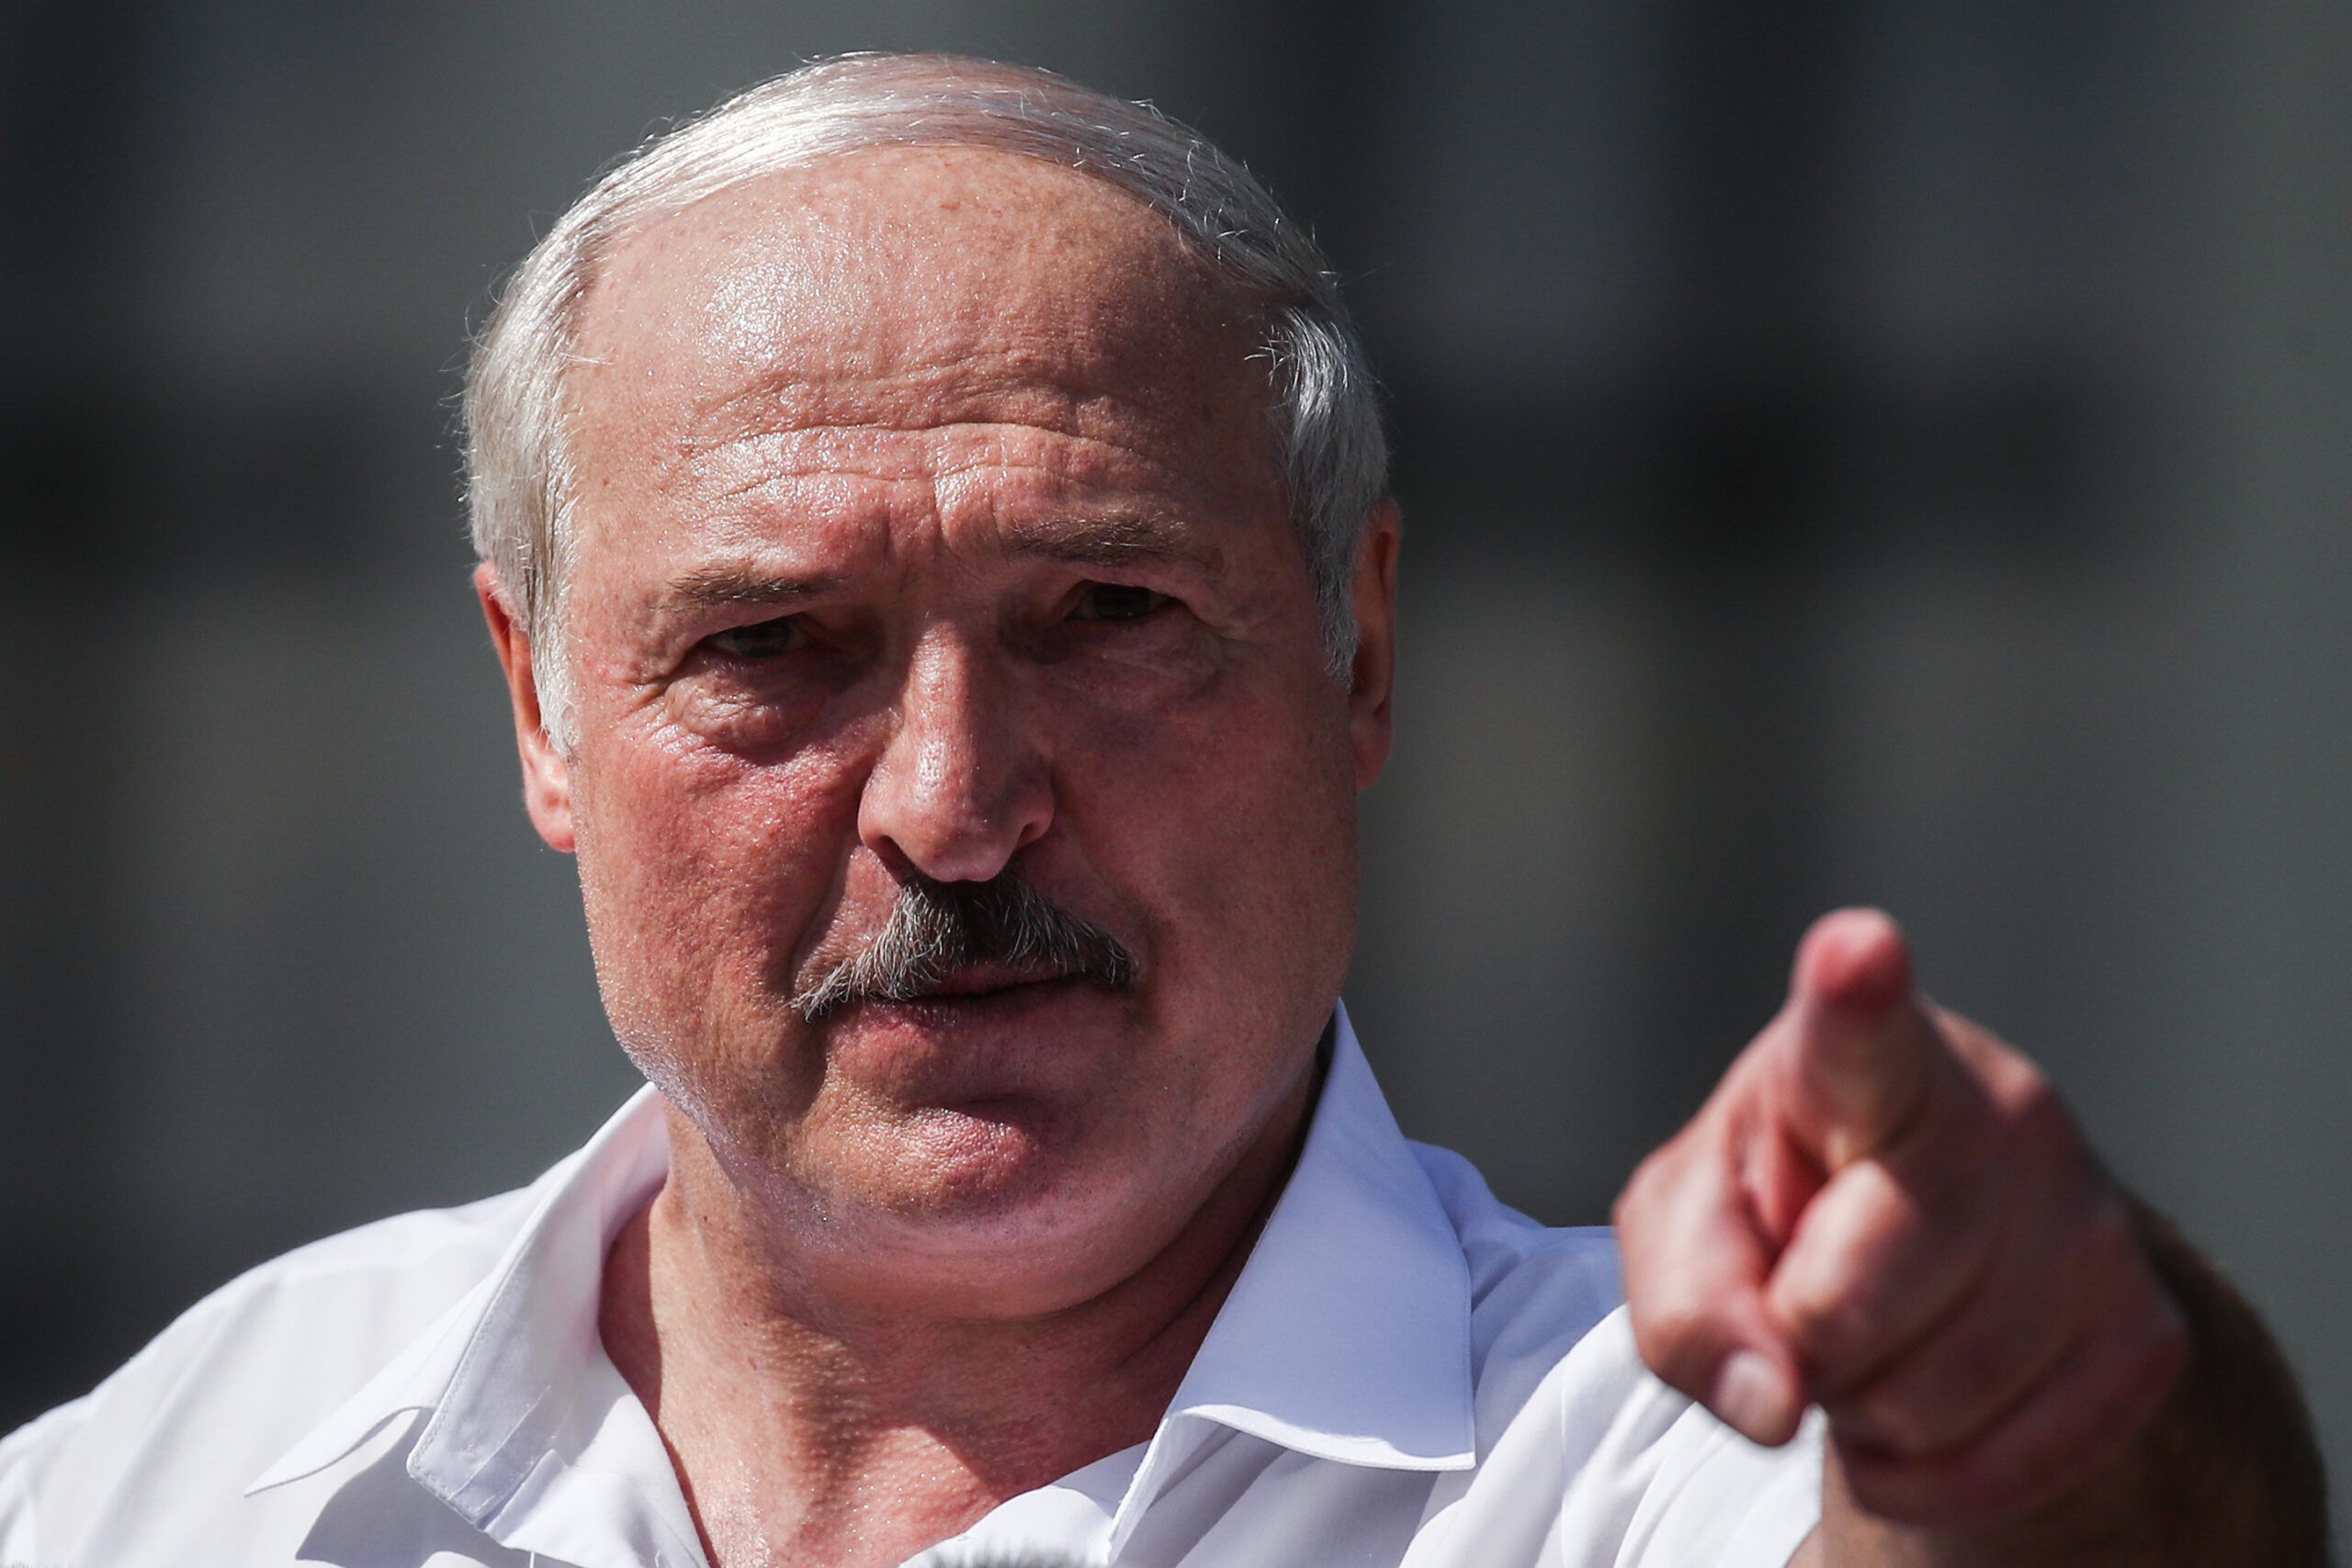 Лукашенко начал говорить о своих противниках и сказал, что не позволит развалить страну. Фото Valery Sharifulin/TASS/Scanpix/Leta